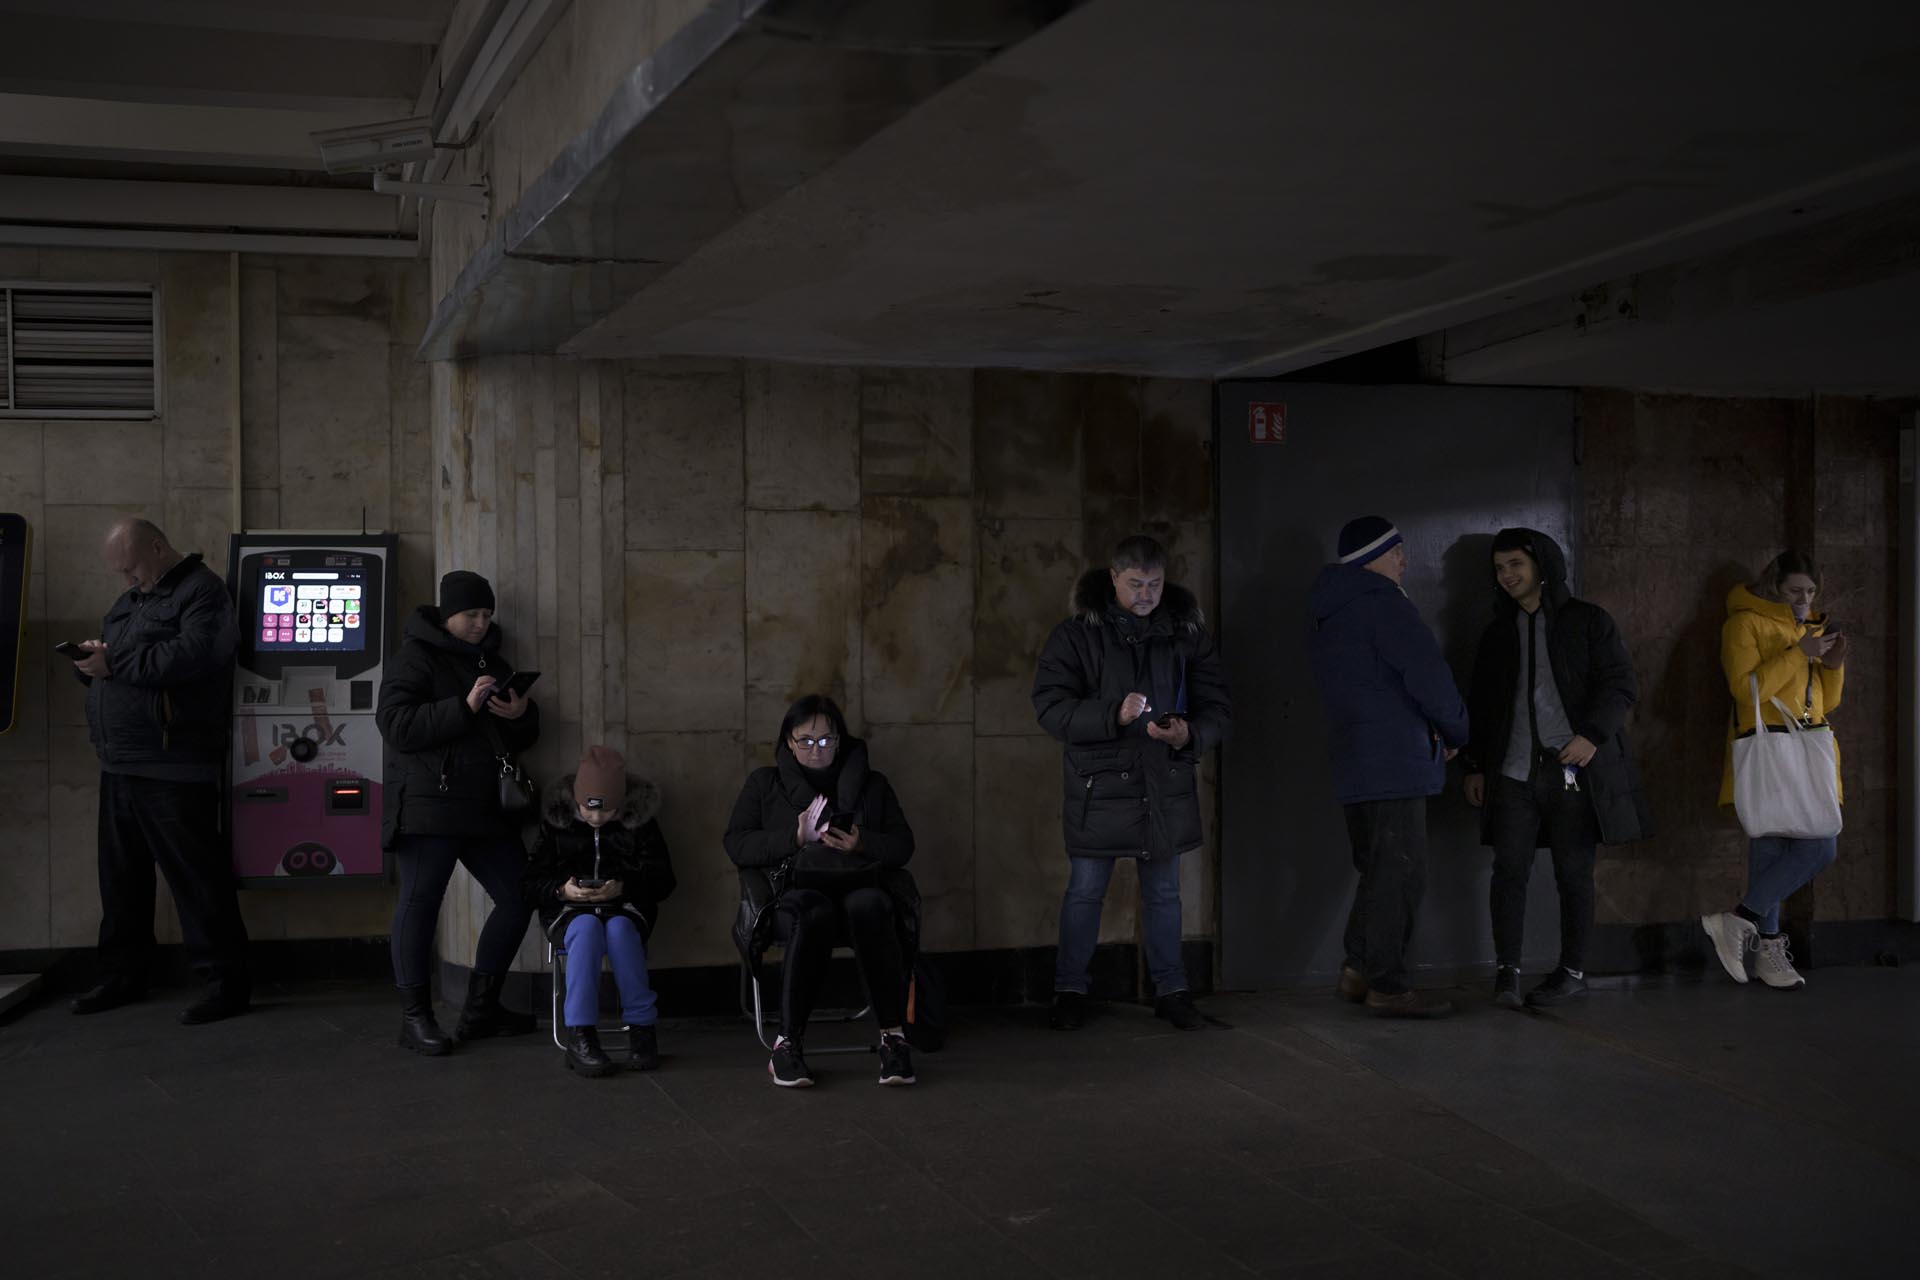 ARCHIVO - Las personas usan sus teléfonos mientras se reúnen en una estación de metro durante una alarma de ataque aéreo, en Kiev, Ucrania, el miércoles 21 de diciembre de 2022.  (Foto AP/Felipe Dana, archivo)

